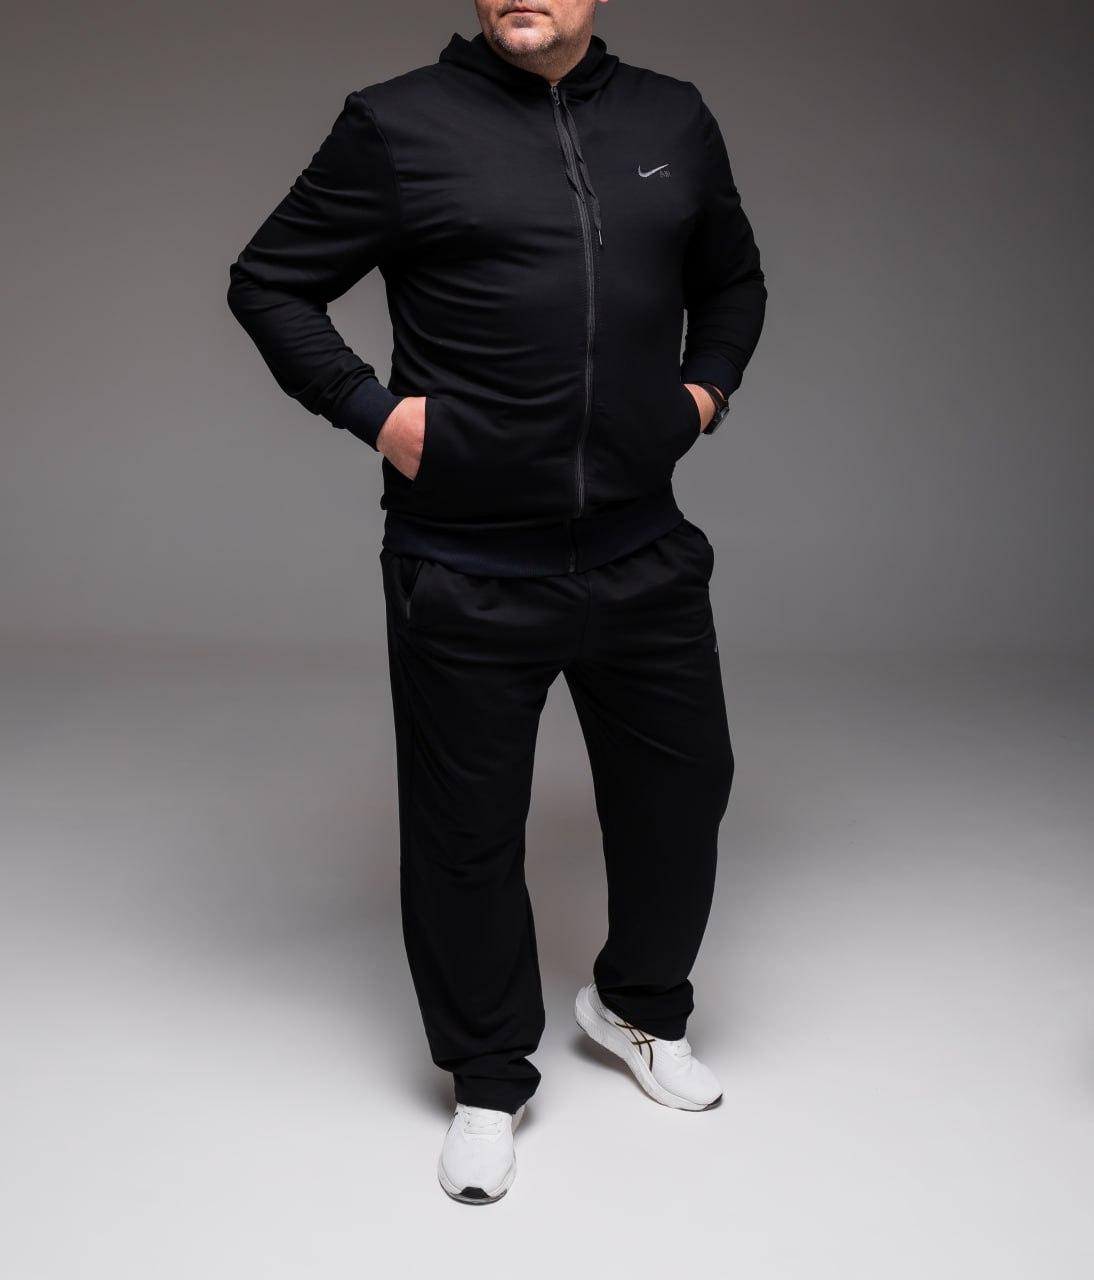 Чоловічий спортивний костюм весняний осінній Nike Найк чорний батал